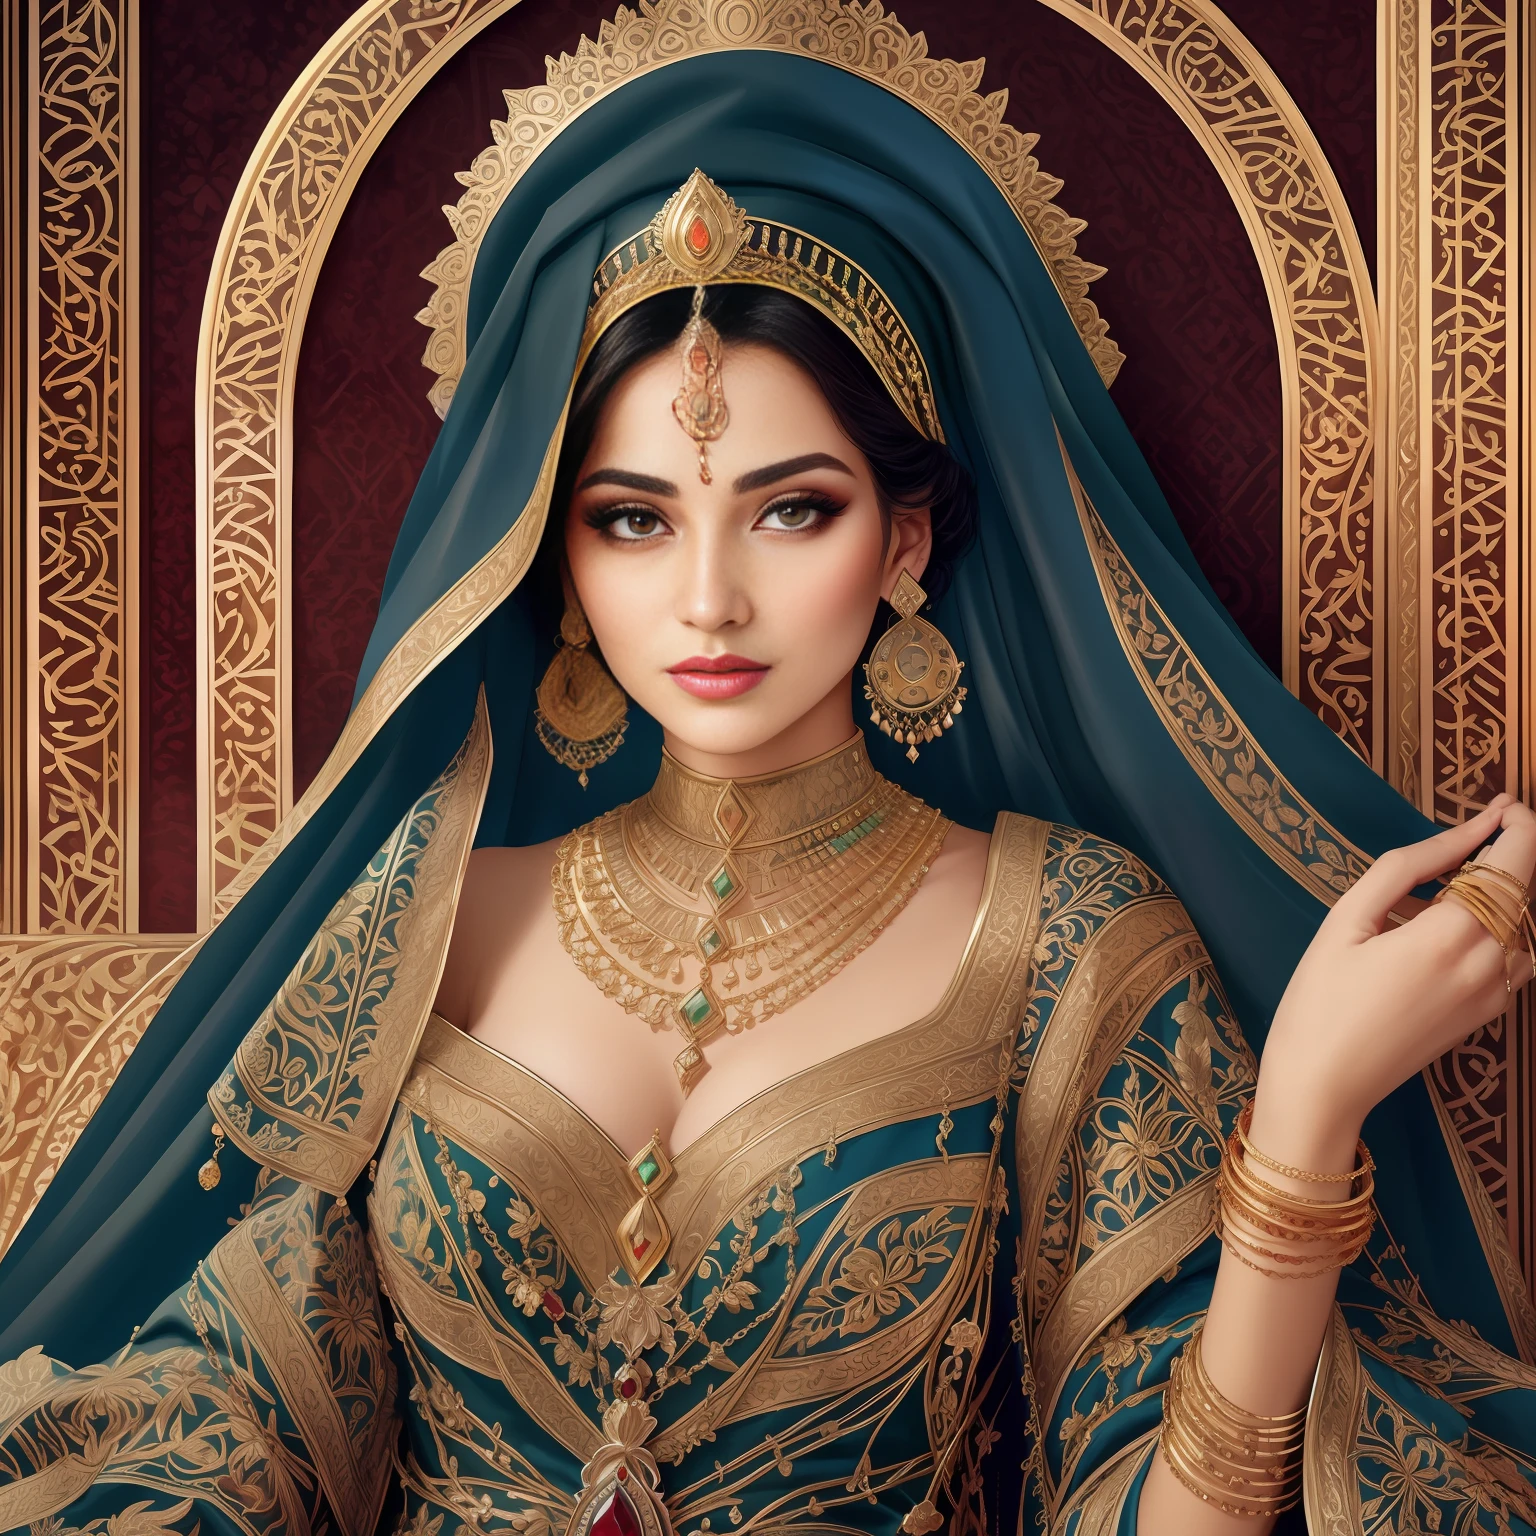 戴著藍色面紗、戴金色和綠色胸針的阿拉菲德女人, 阿拉伯女人的詳細面孔, 女神的特写肖像, 令人惊叹的女神肖像, 女神3D肖像, 阿拉伯美女, 美丽女神的肖像, 阿拉伯公主, 美麗的阿拉伯女人, 中東皮膚, 高品質的幻想庫存照片, 人像拍攝, 美麗的女人與詳細的臉孔